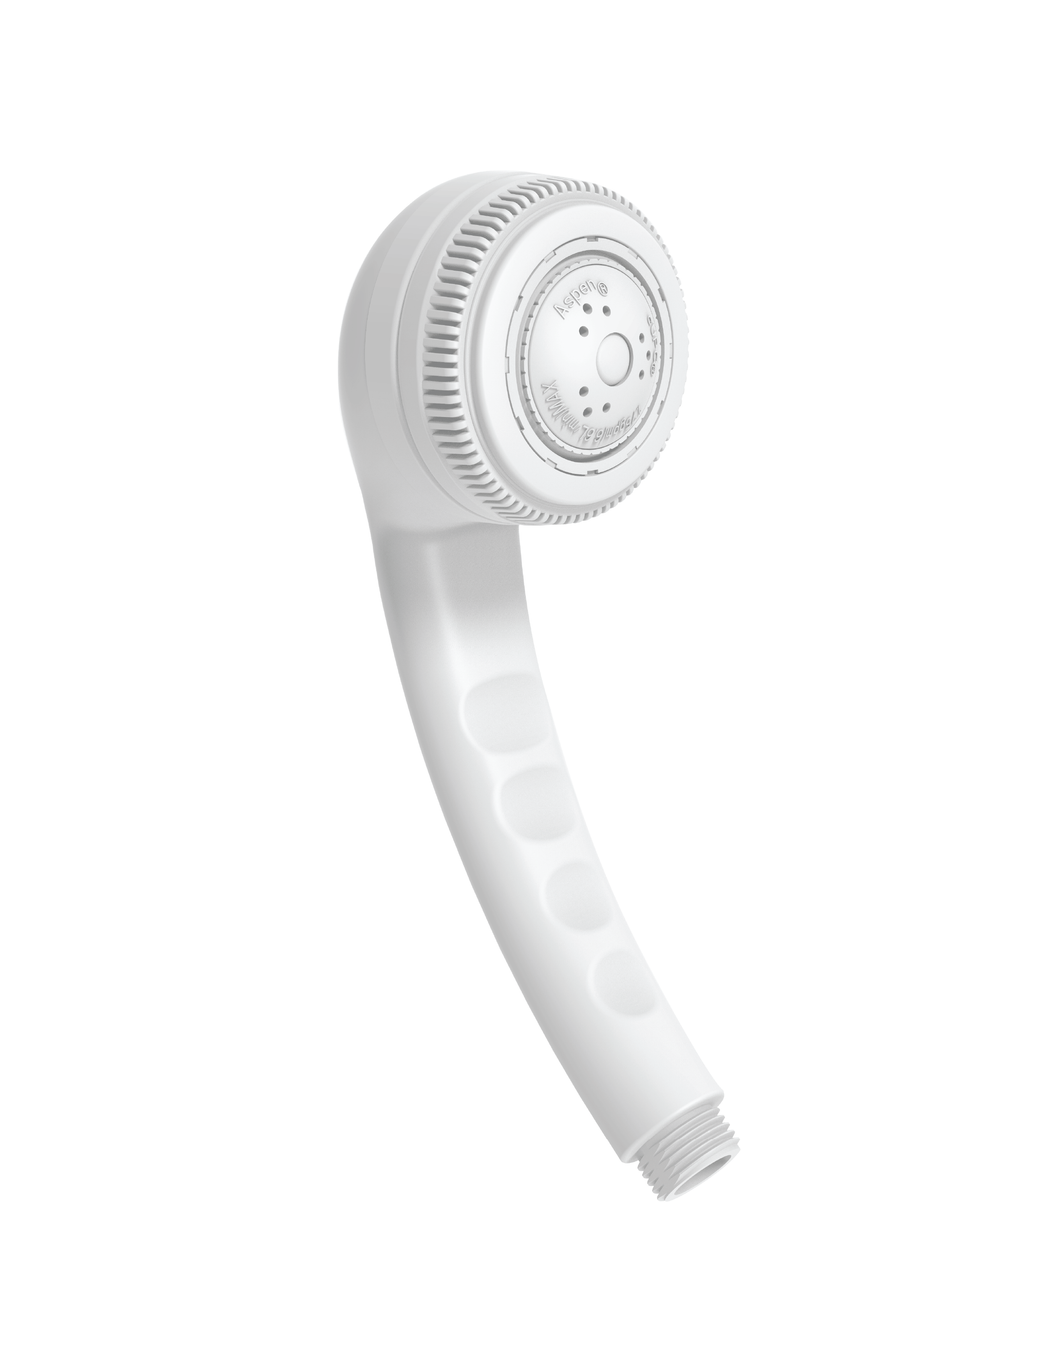 1.5GPM Handheld White Shower Head (W)